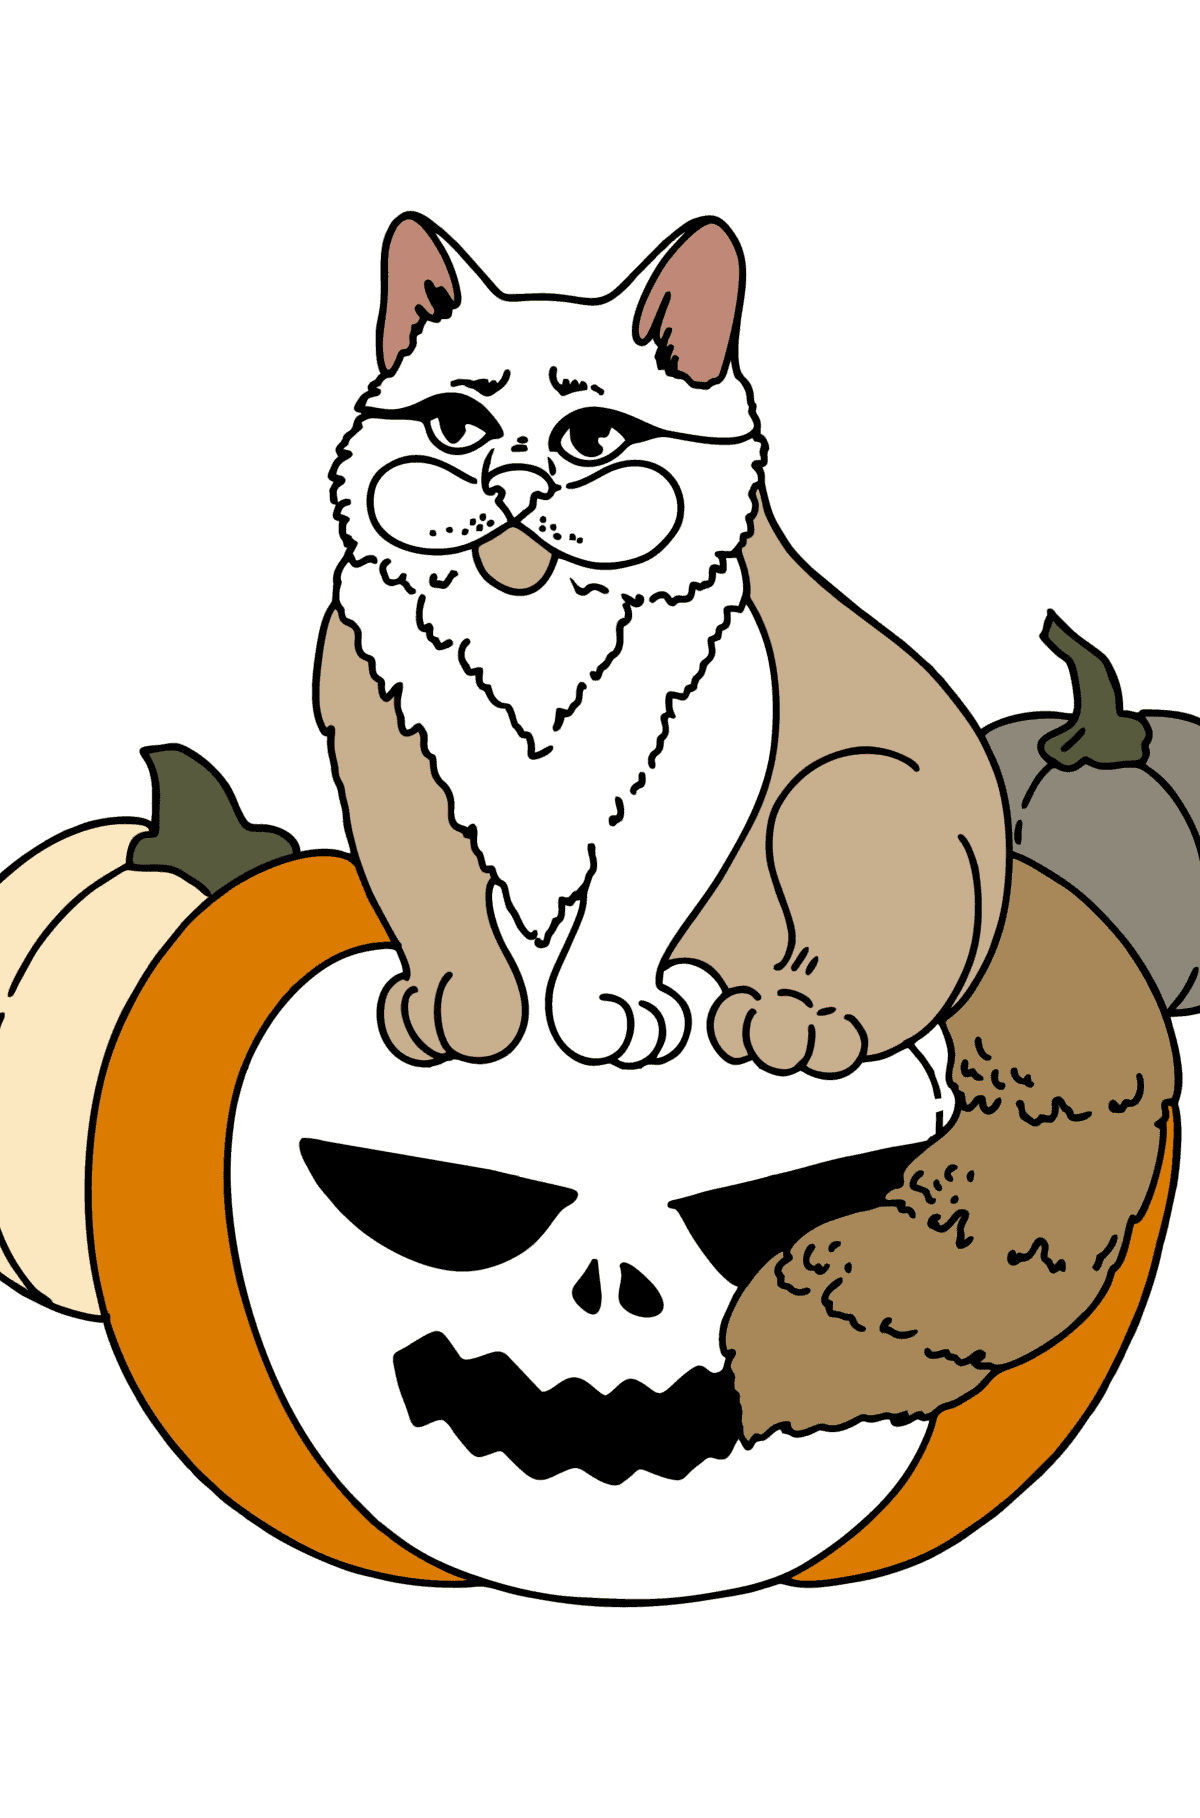 Розмальовка кота Хеллоуїна - Розмальовки для дітей